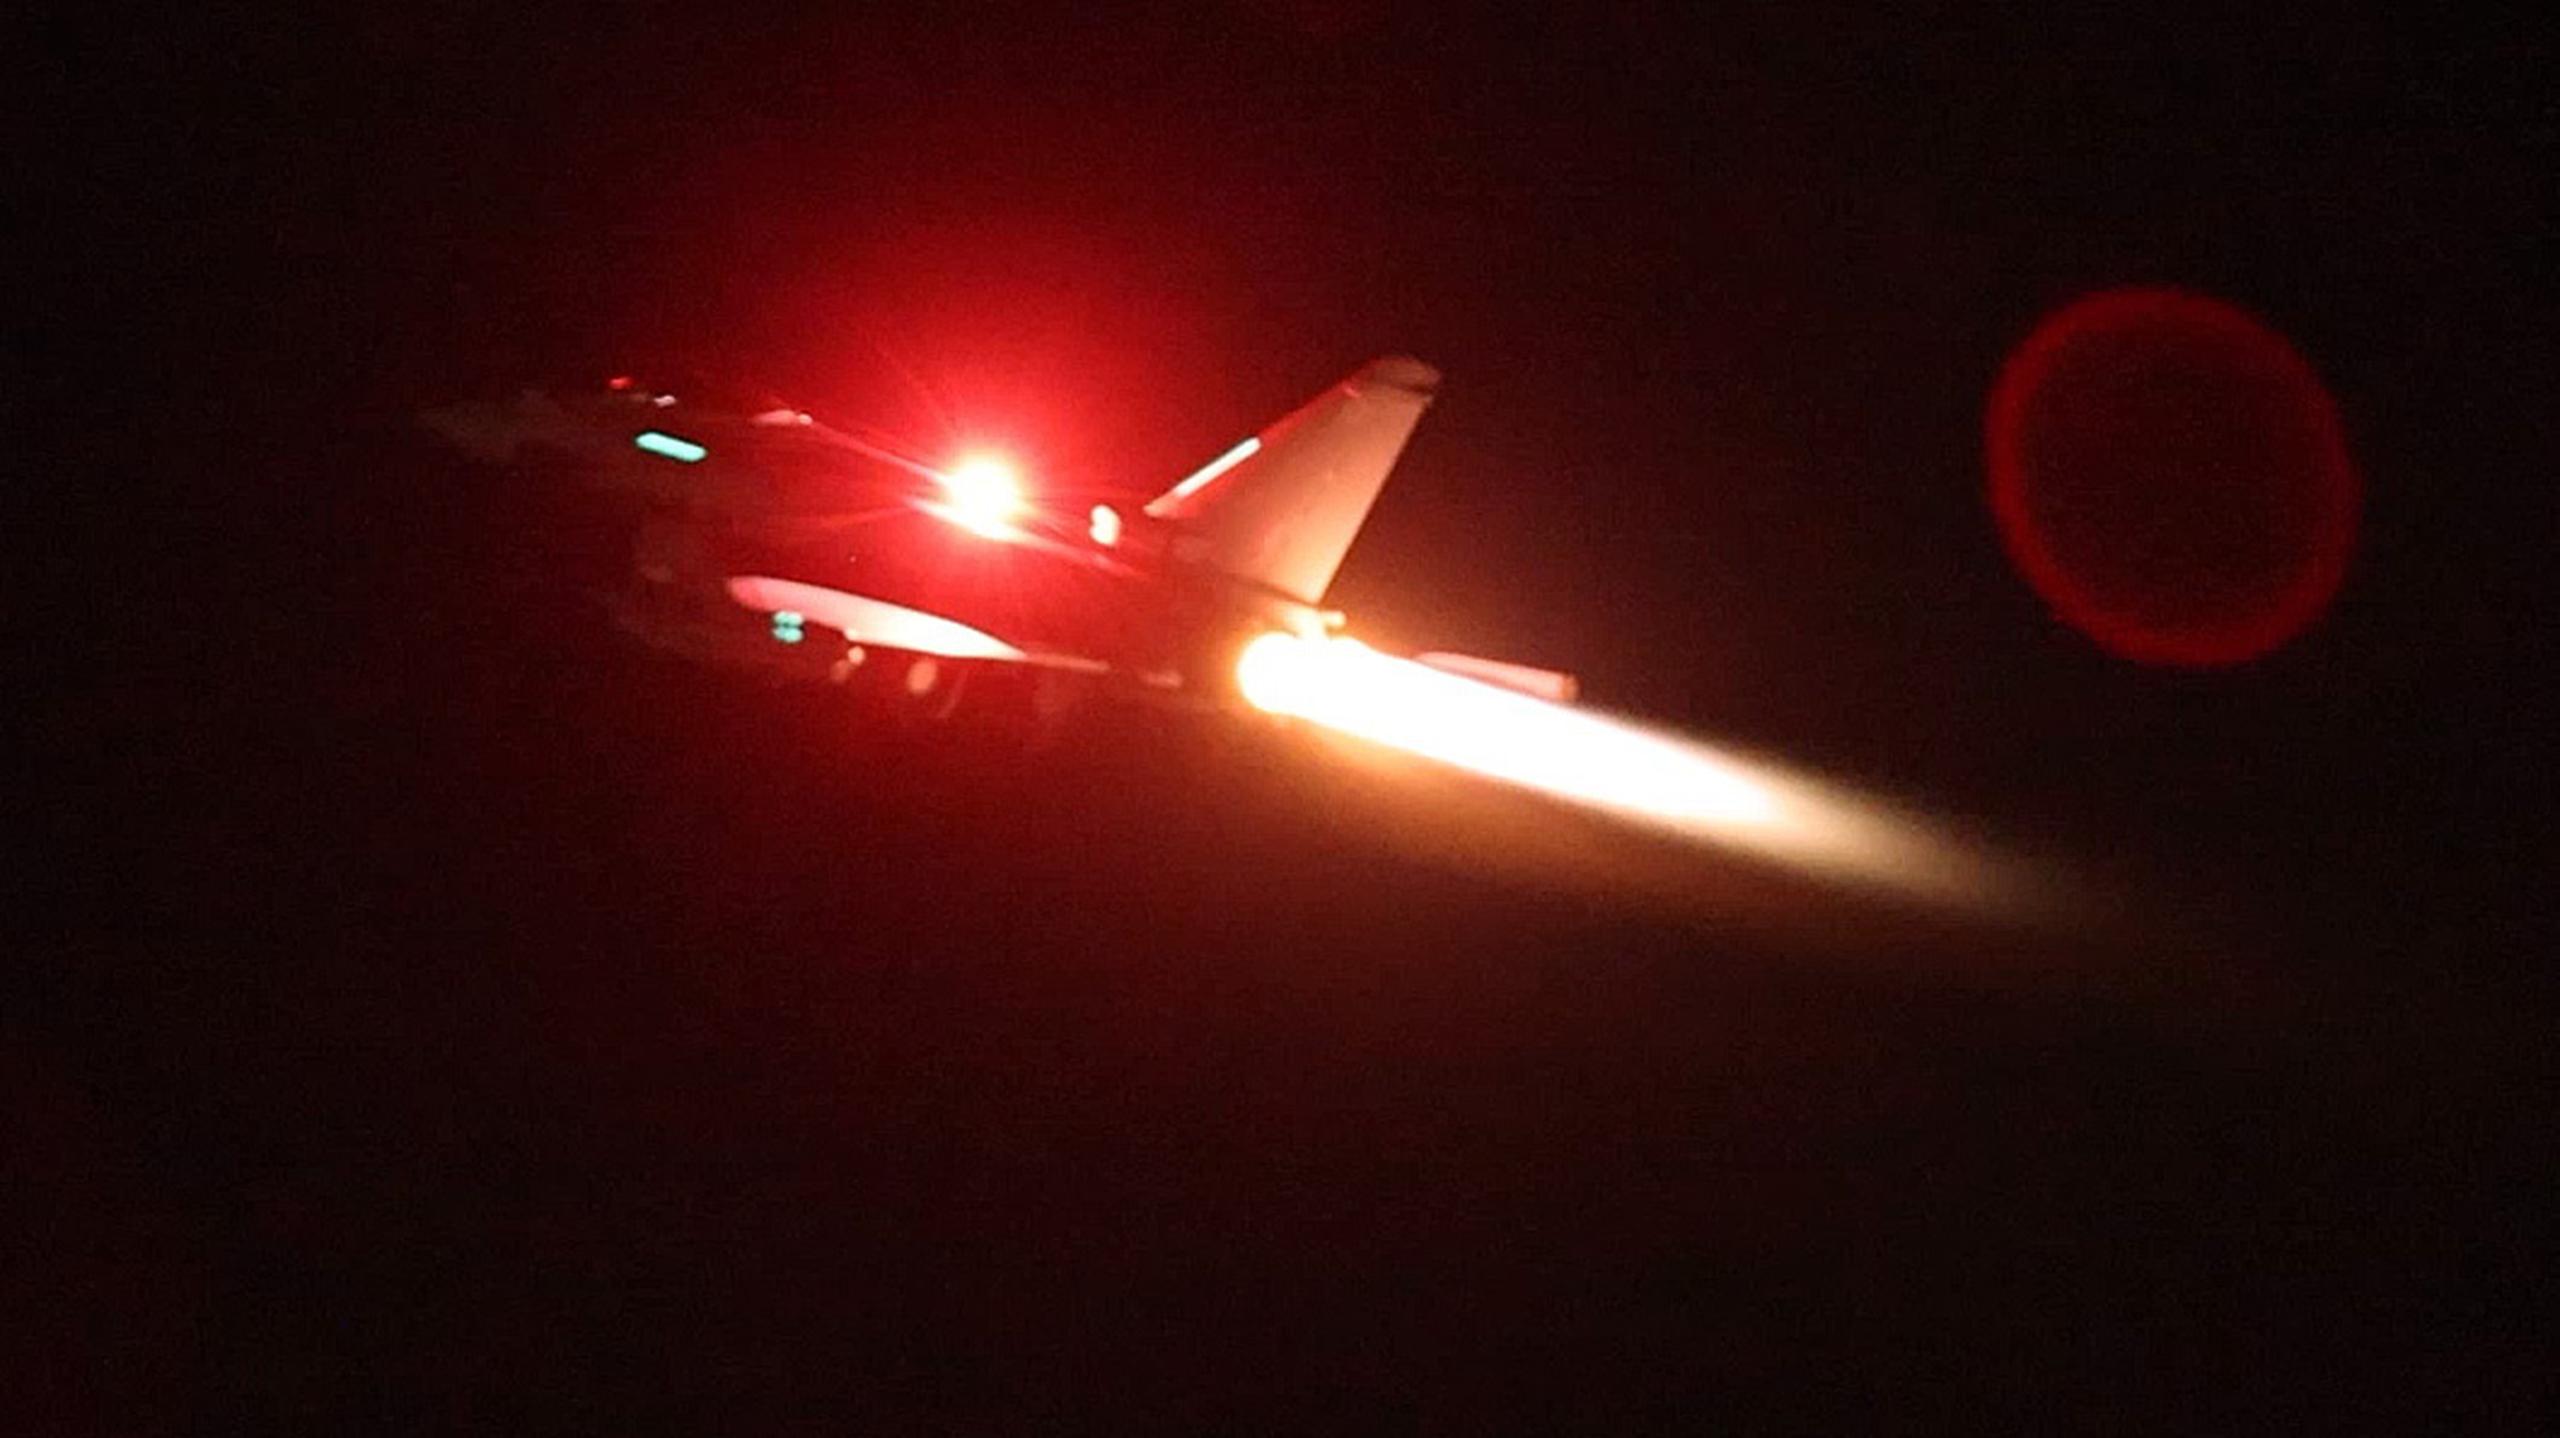 Fotografía cedida por la Real Fuerza Aérea Británica, en la que se registró un avión militar del Reino Unido durante un ataque contra objetivos hutíues en Yemen.